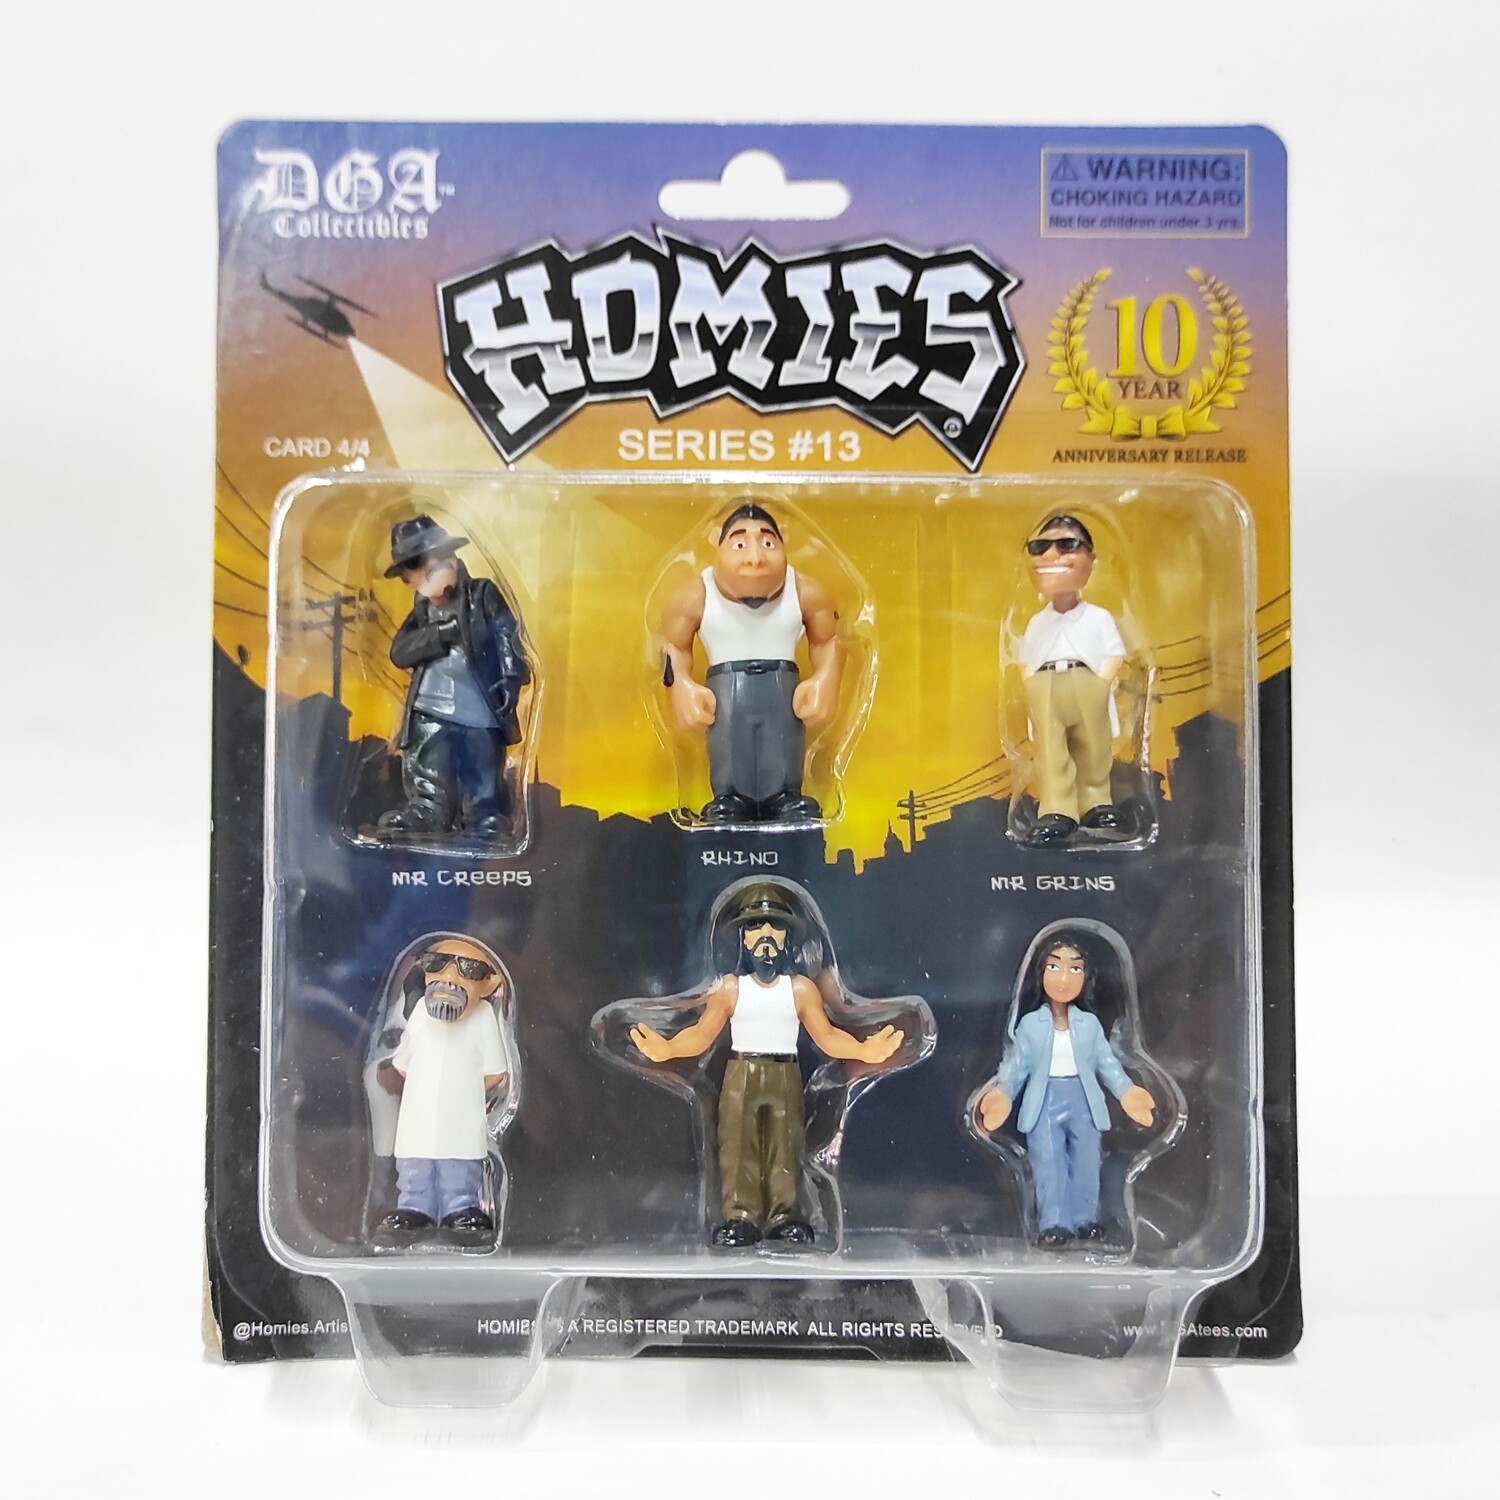 Homies series 13 Card 4/4